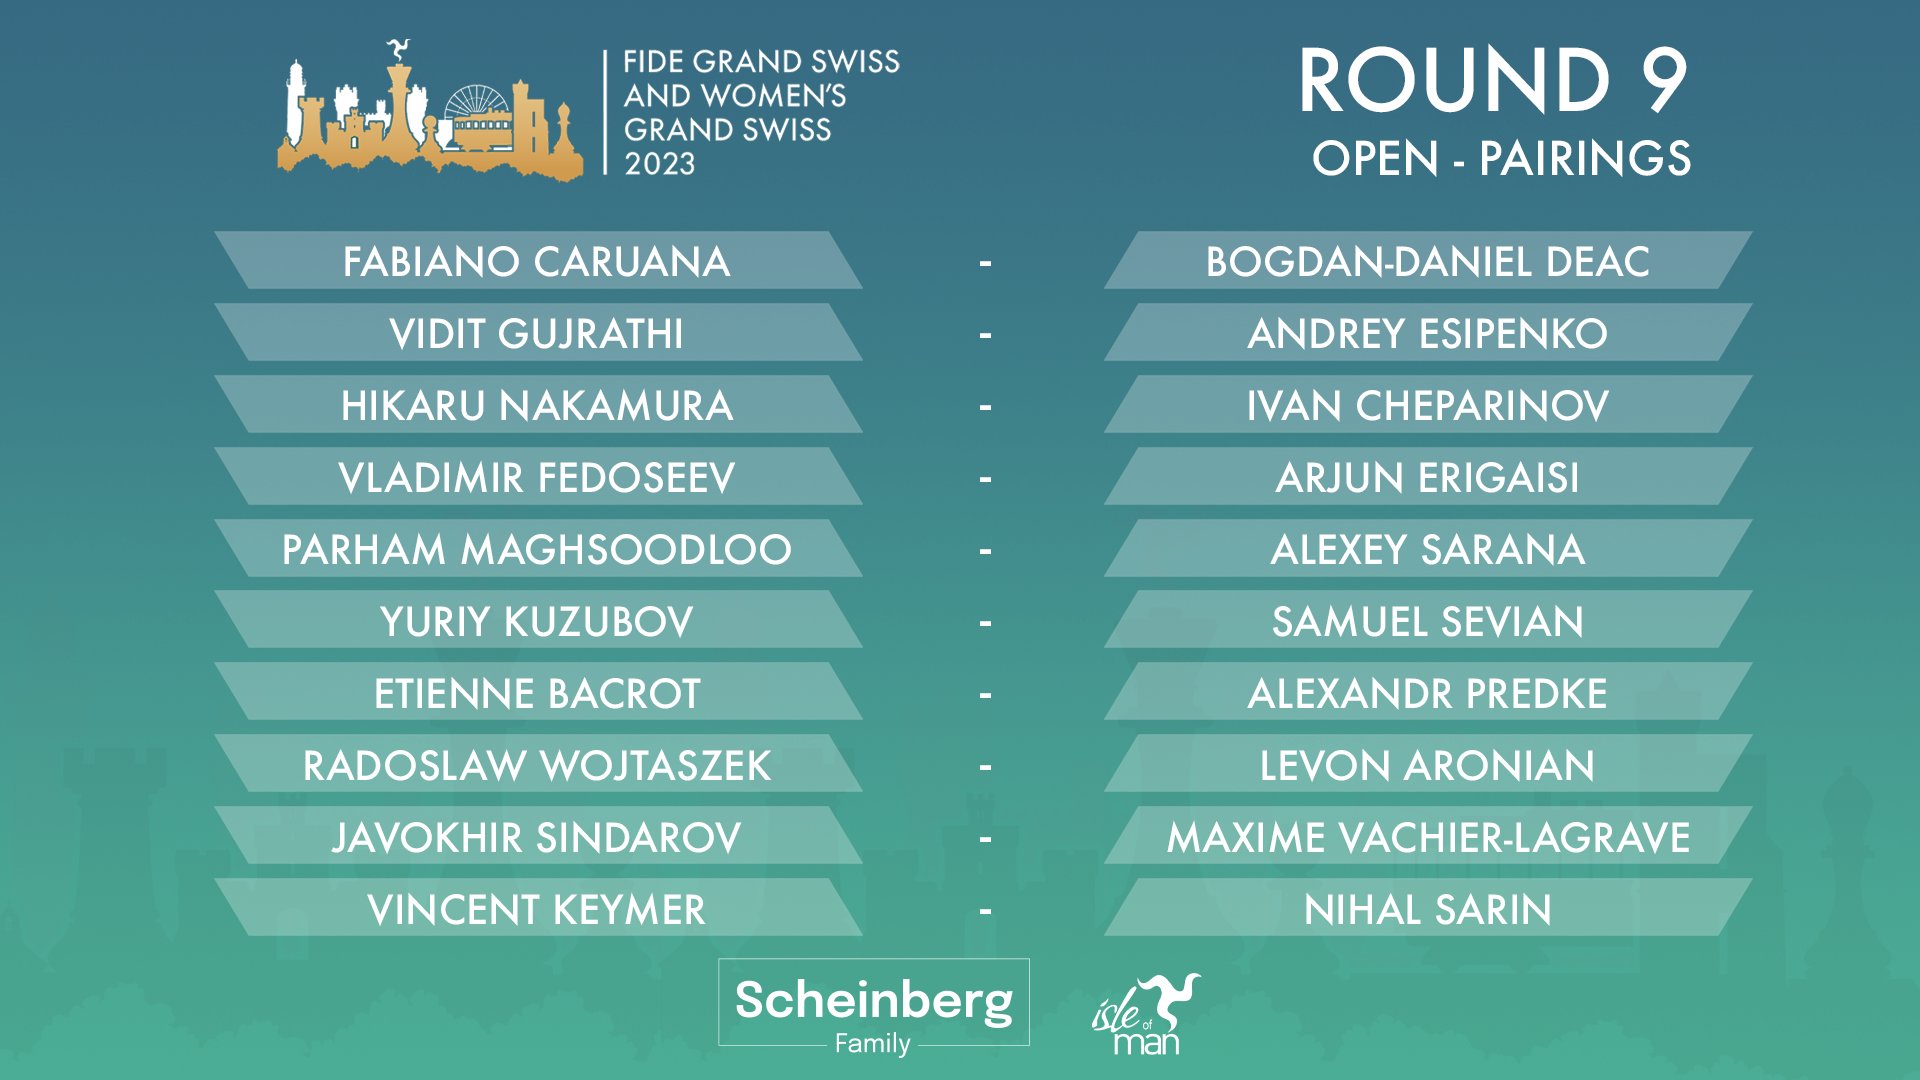 Round 10 FIDE Grand Swiss and Women's Grand Swiss 2023